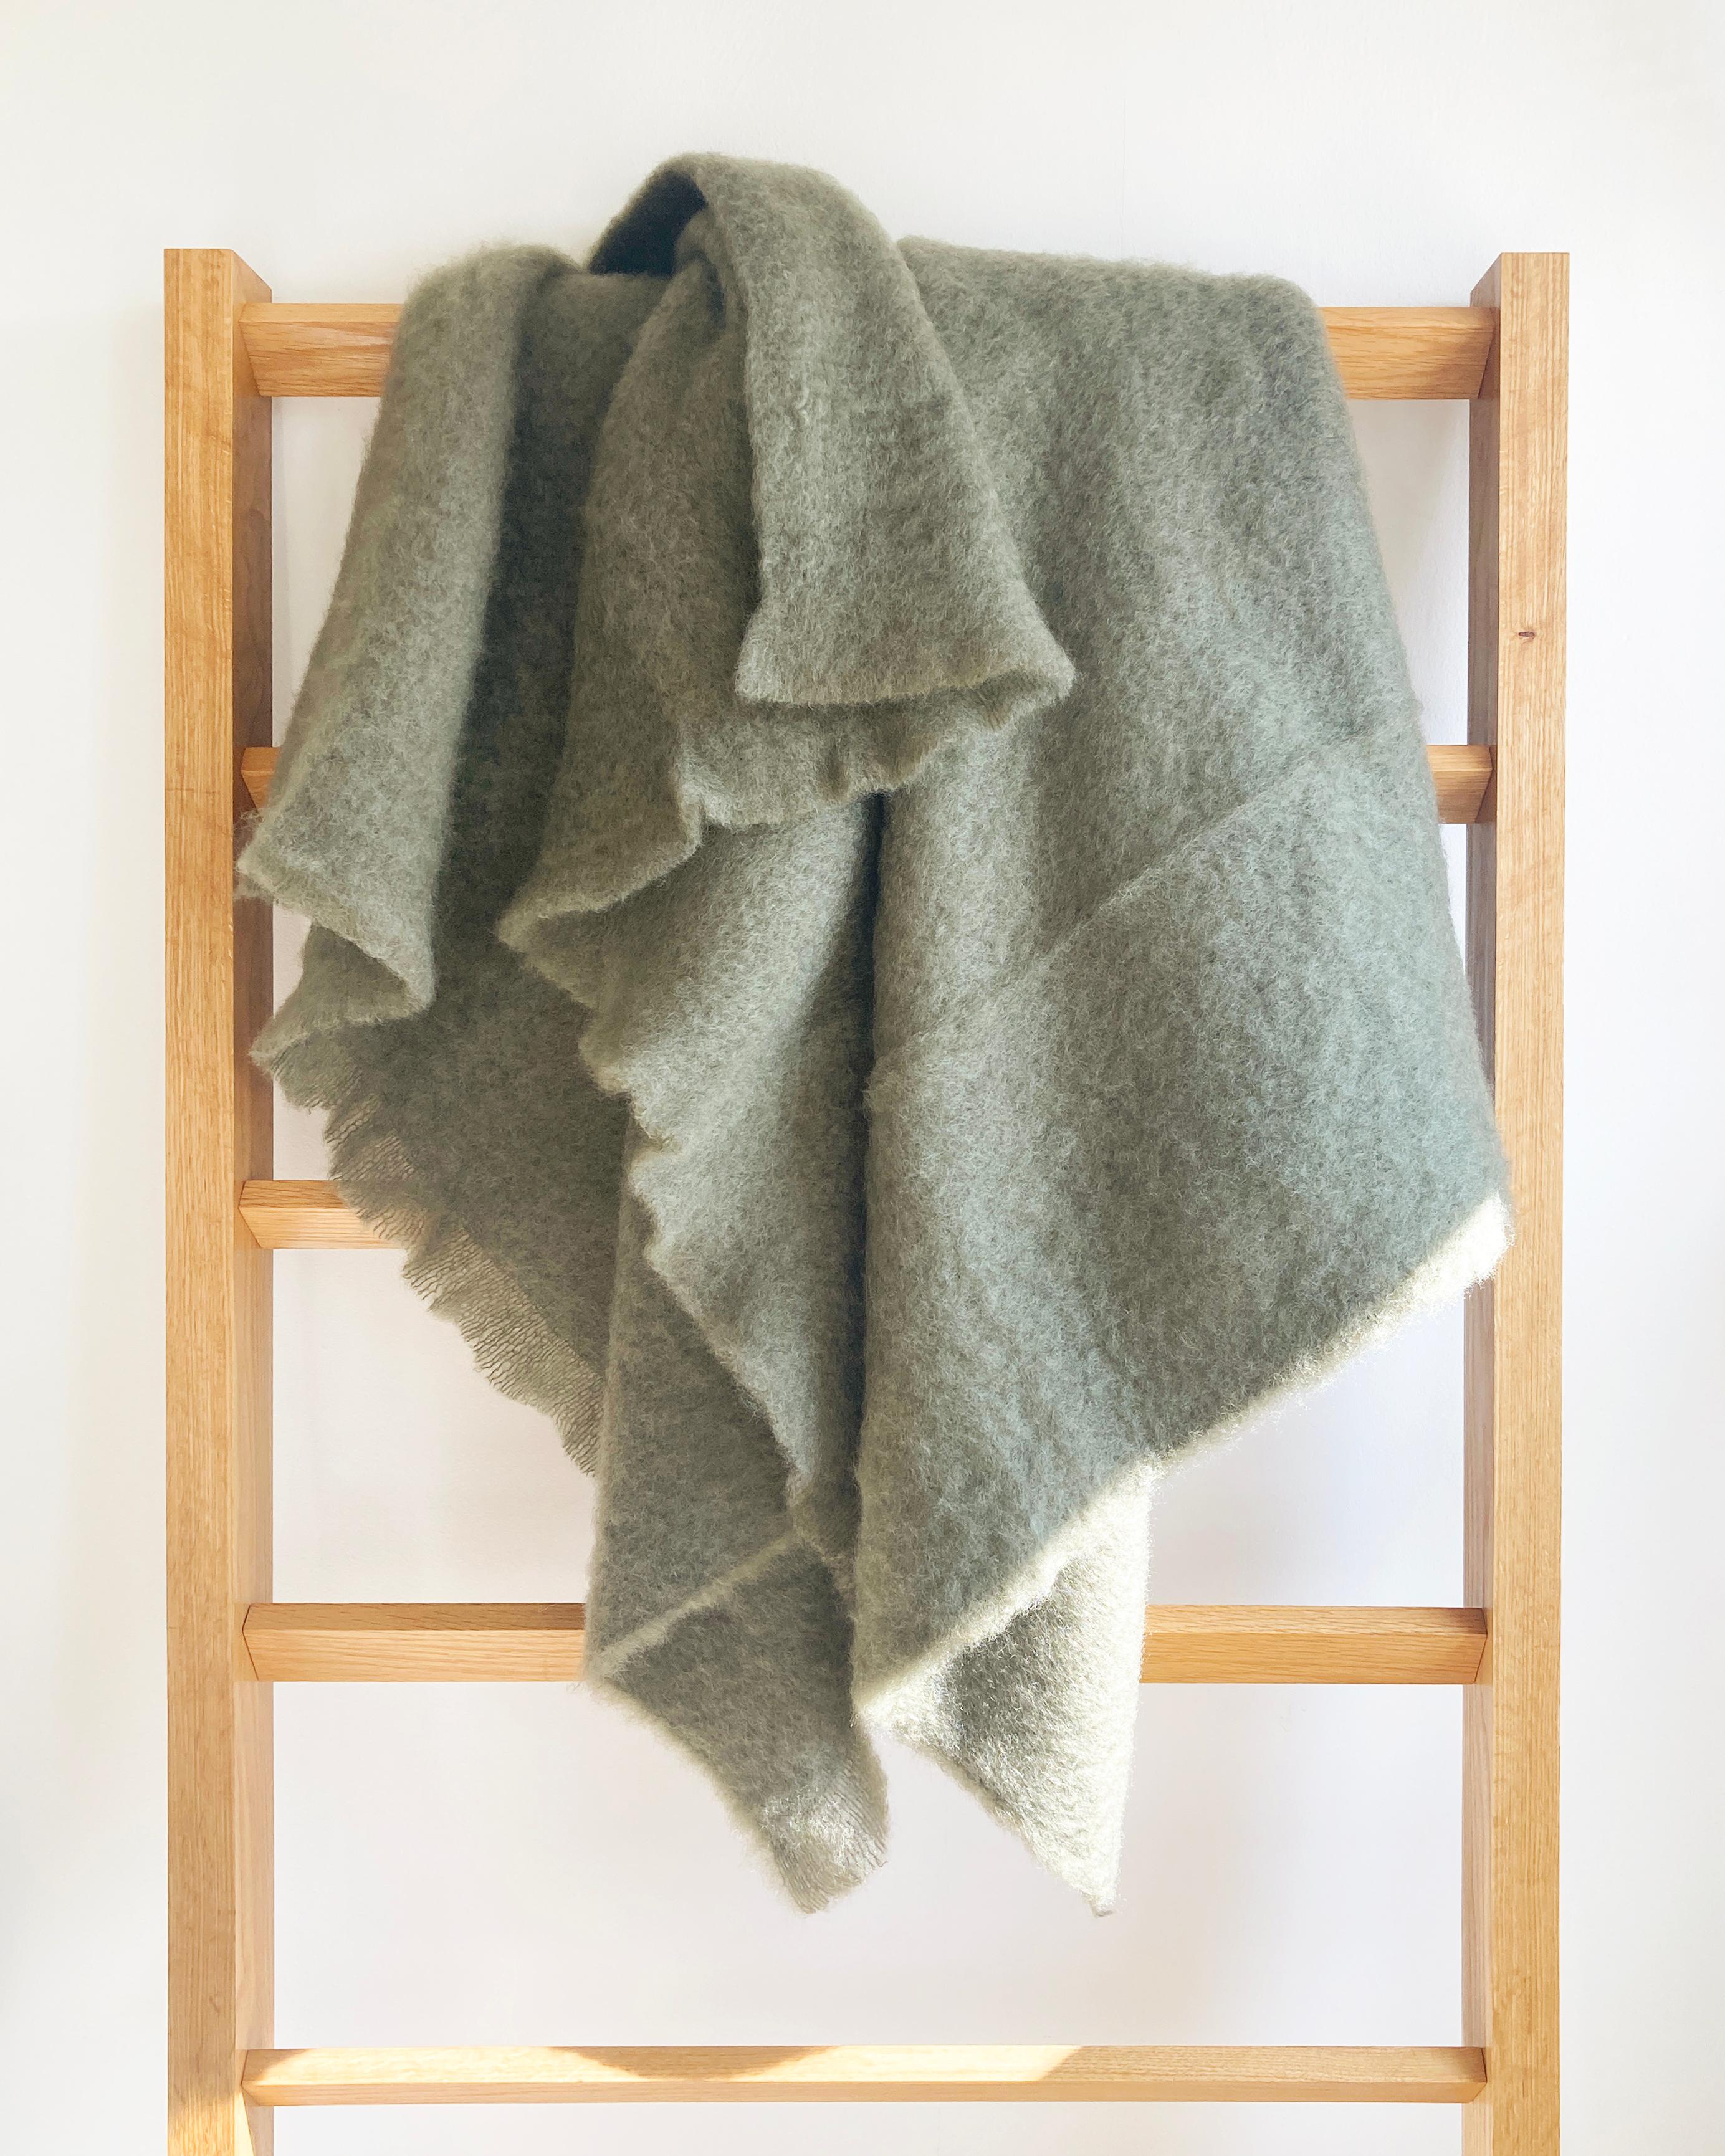 Des couvertures douillettes pour la maison.

Les couvertures en mohair vous garderont bien au chaud cet hiver. Lorsque le temps froid arrive, enveloppez-vous dans ce magnifique jeté en mohair vert mousse et restez bien au chaud. Ce vert discret